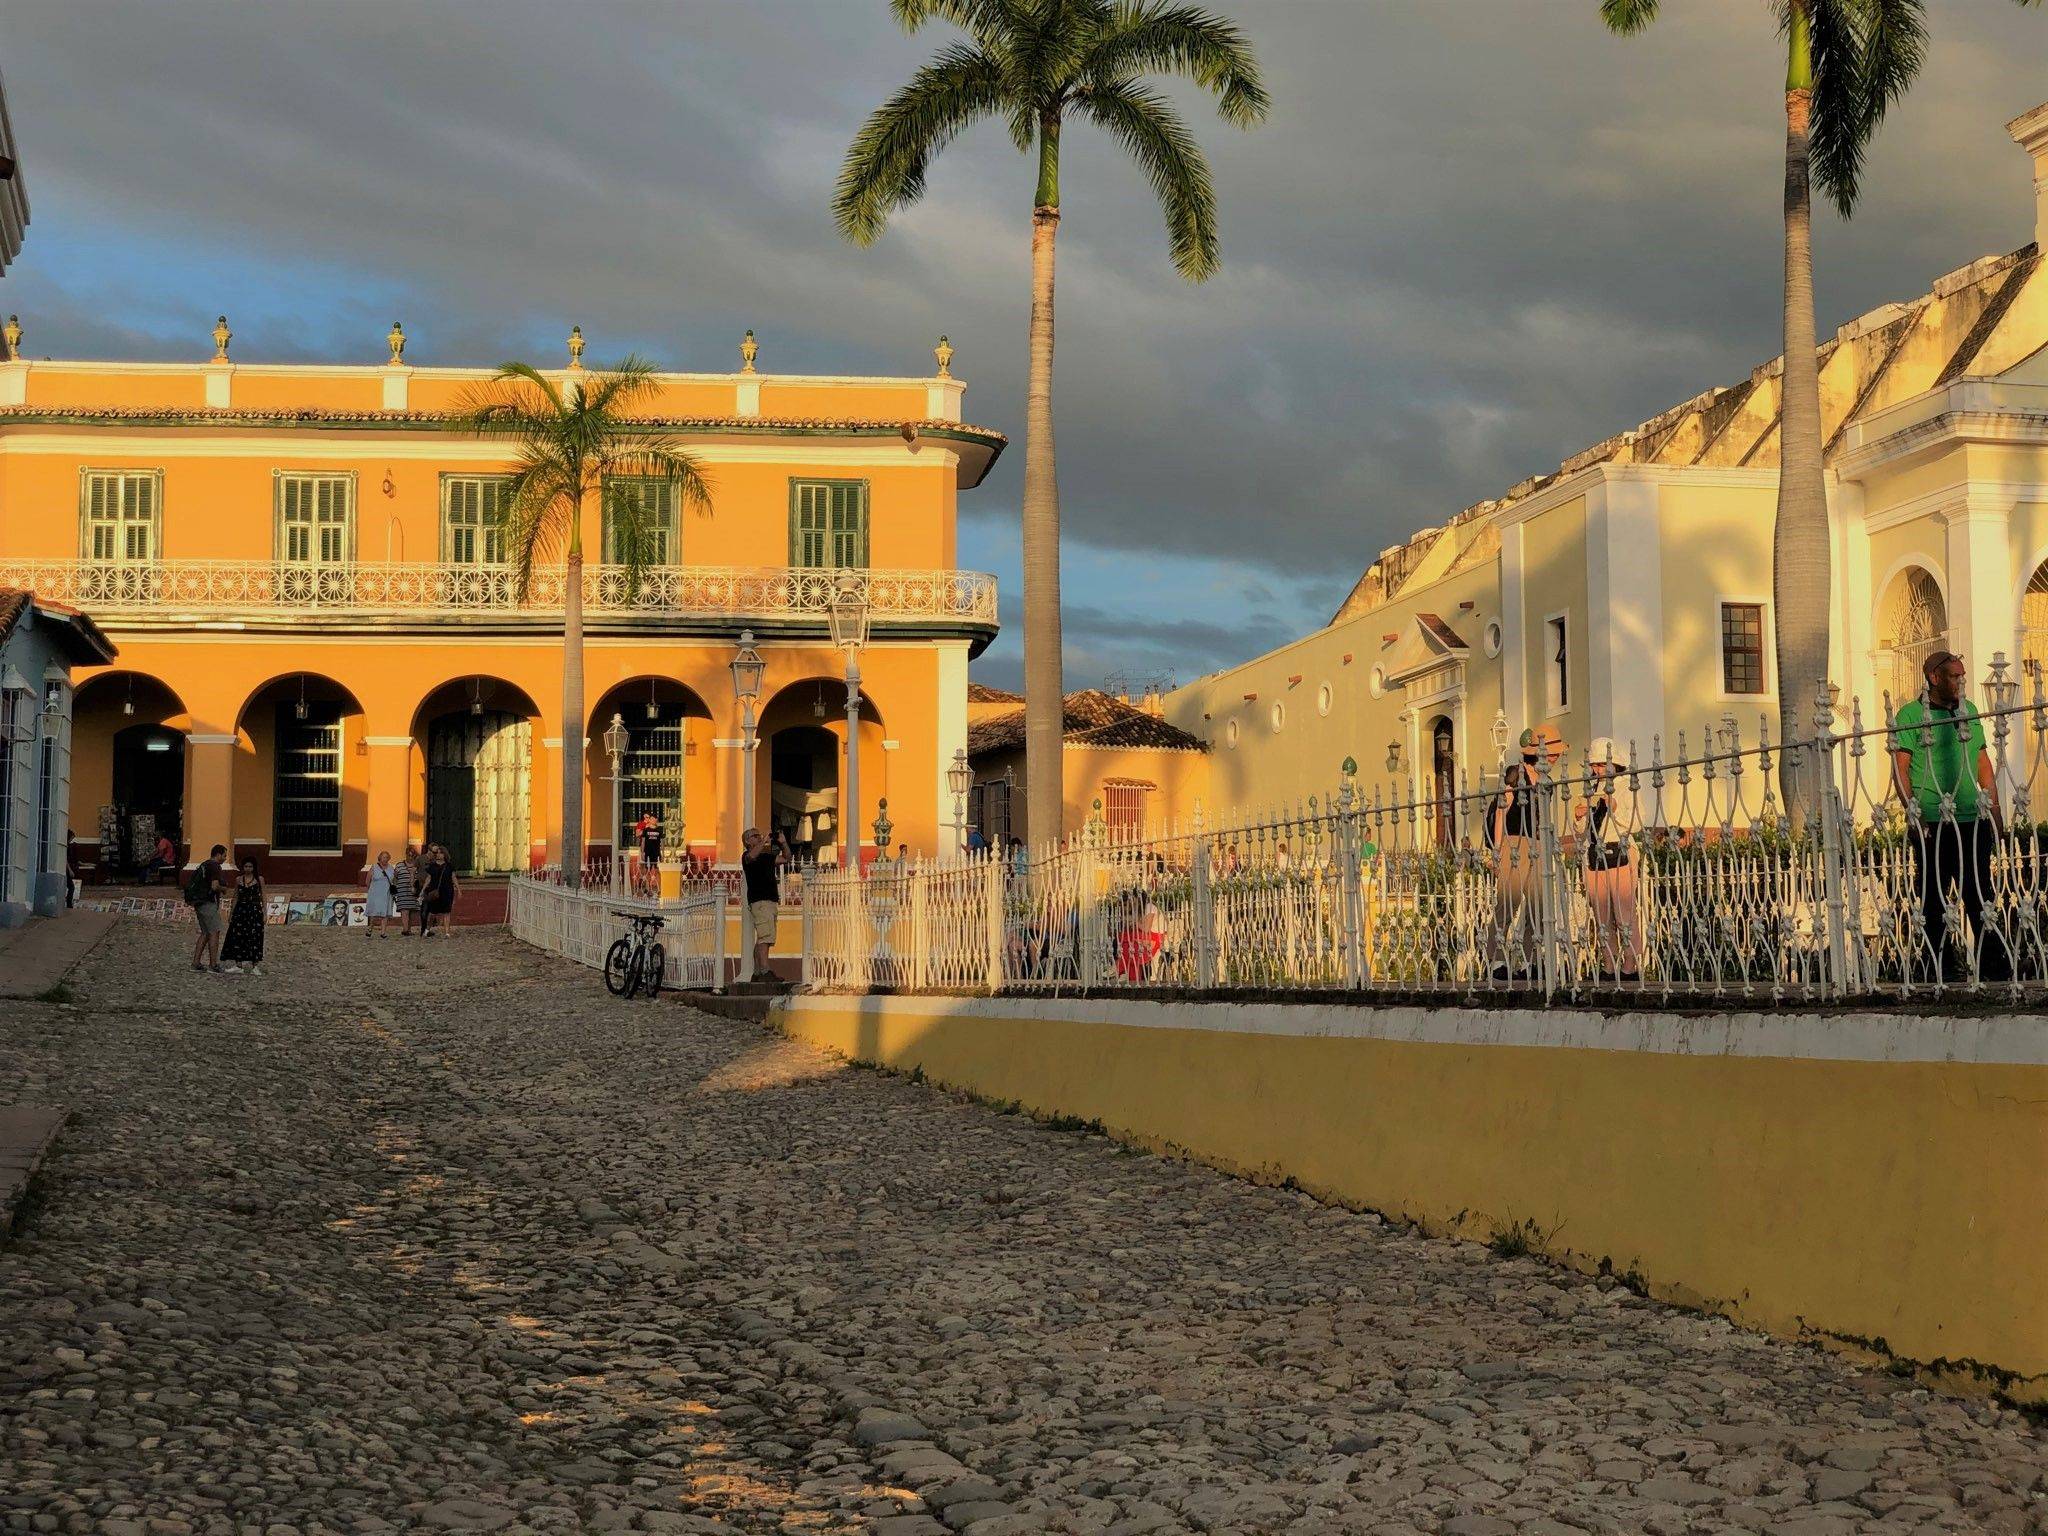 Ontdek het echte Cuba op eigen gelegenheid in Trinidad